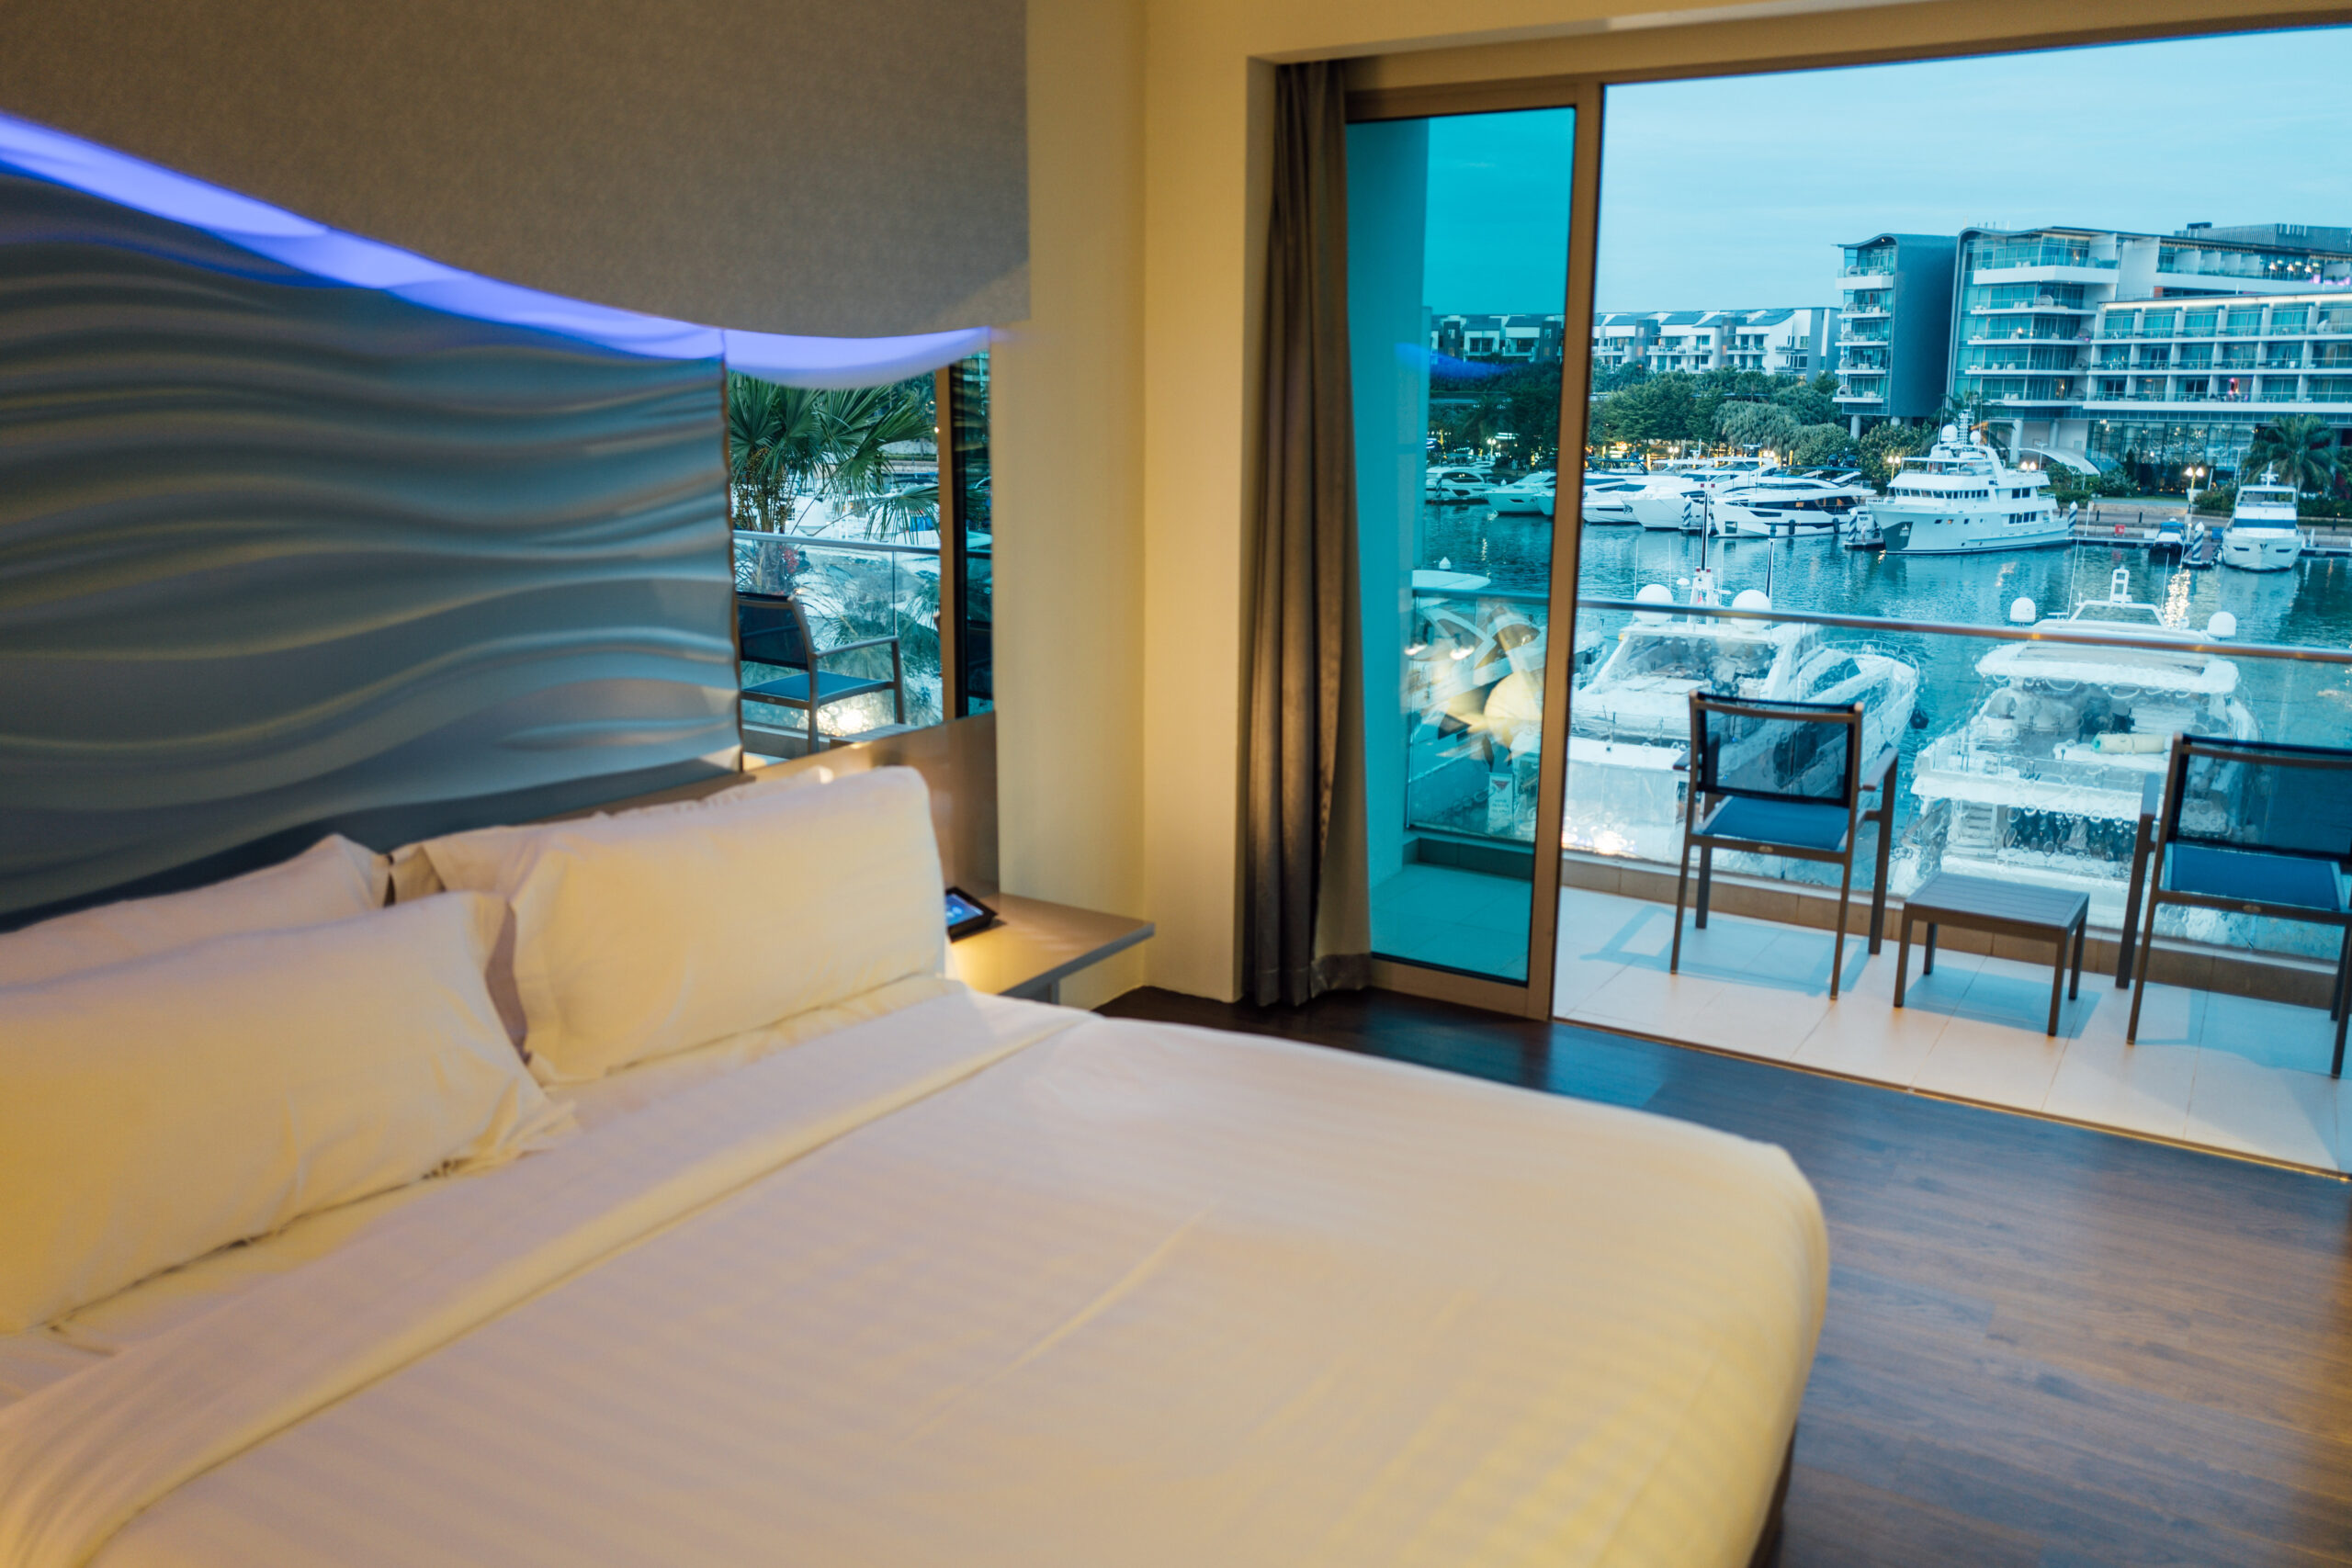 ONE°15 Marina Sentosa Cove room view